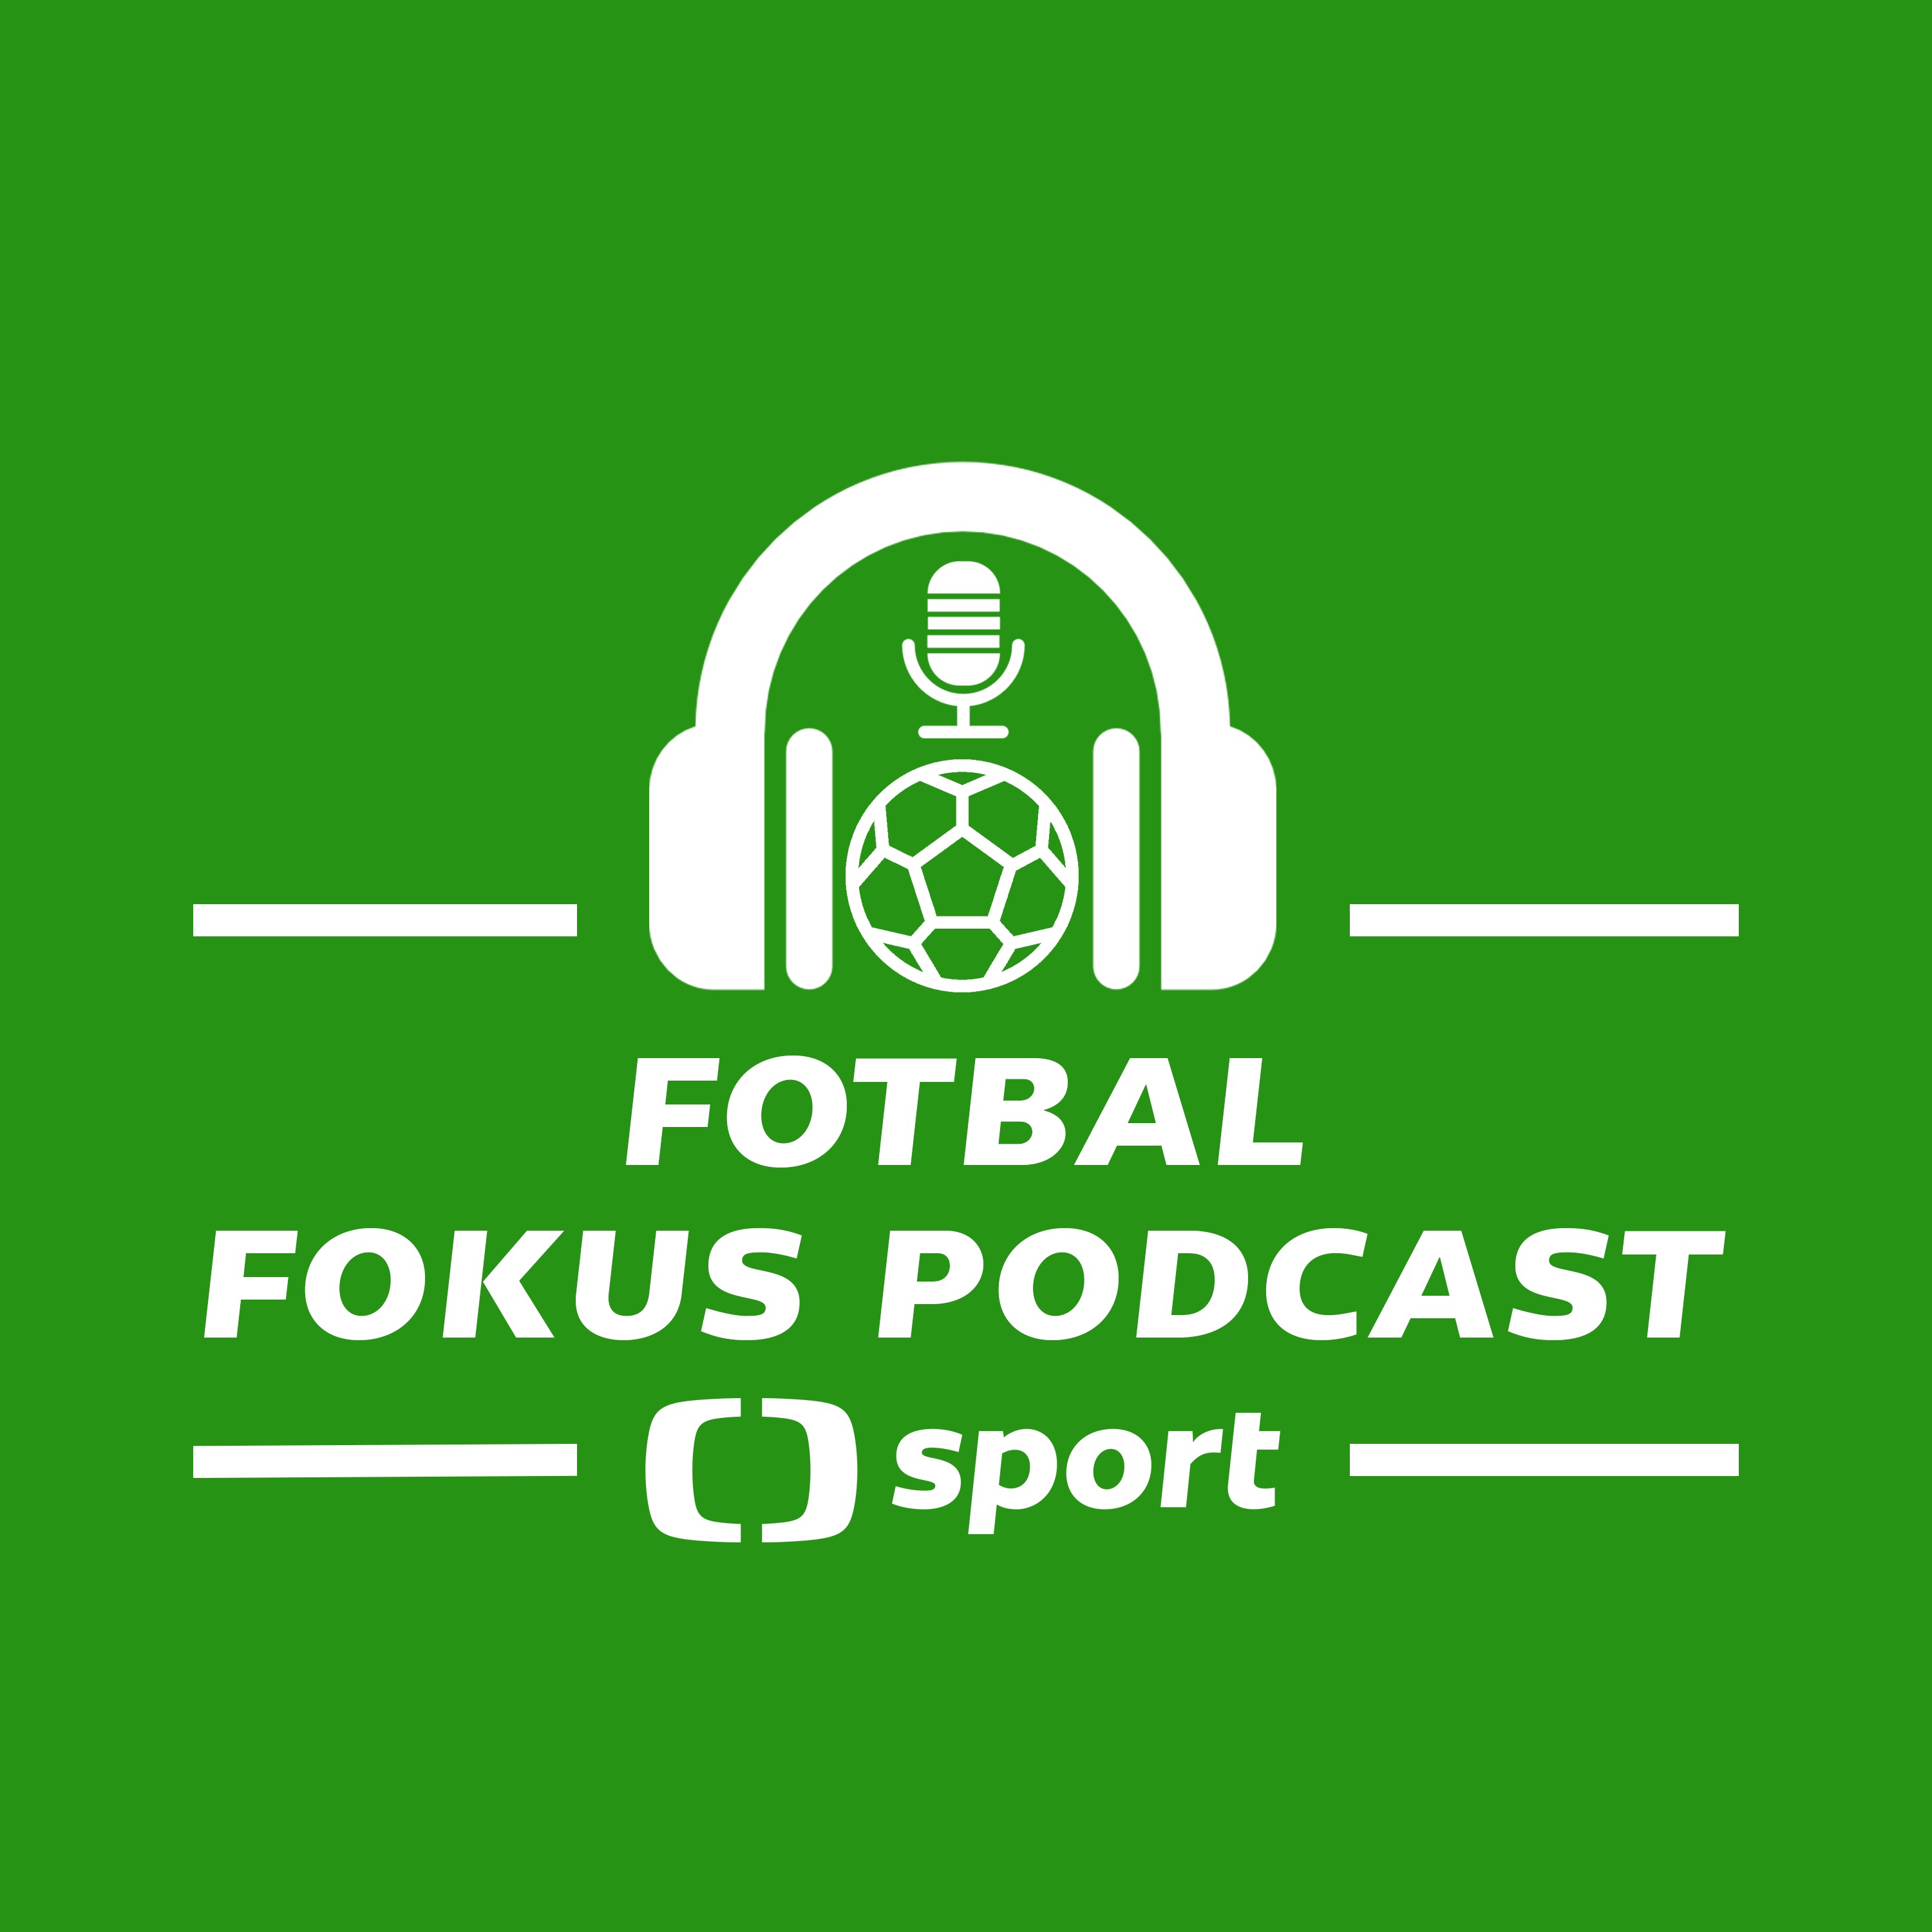 Fotbal fokus podcast: Roste z Krejčího sparťanský Souček a vyzve Slavia Arsenal v ideální čas?